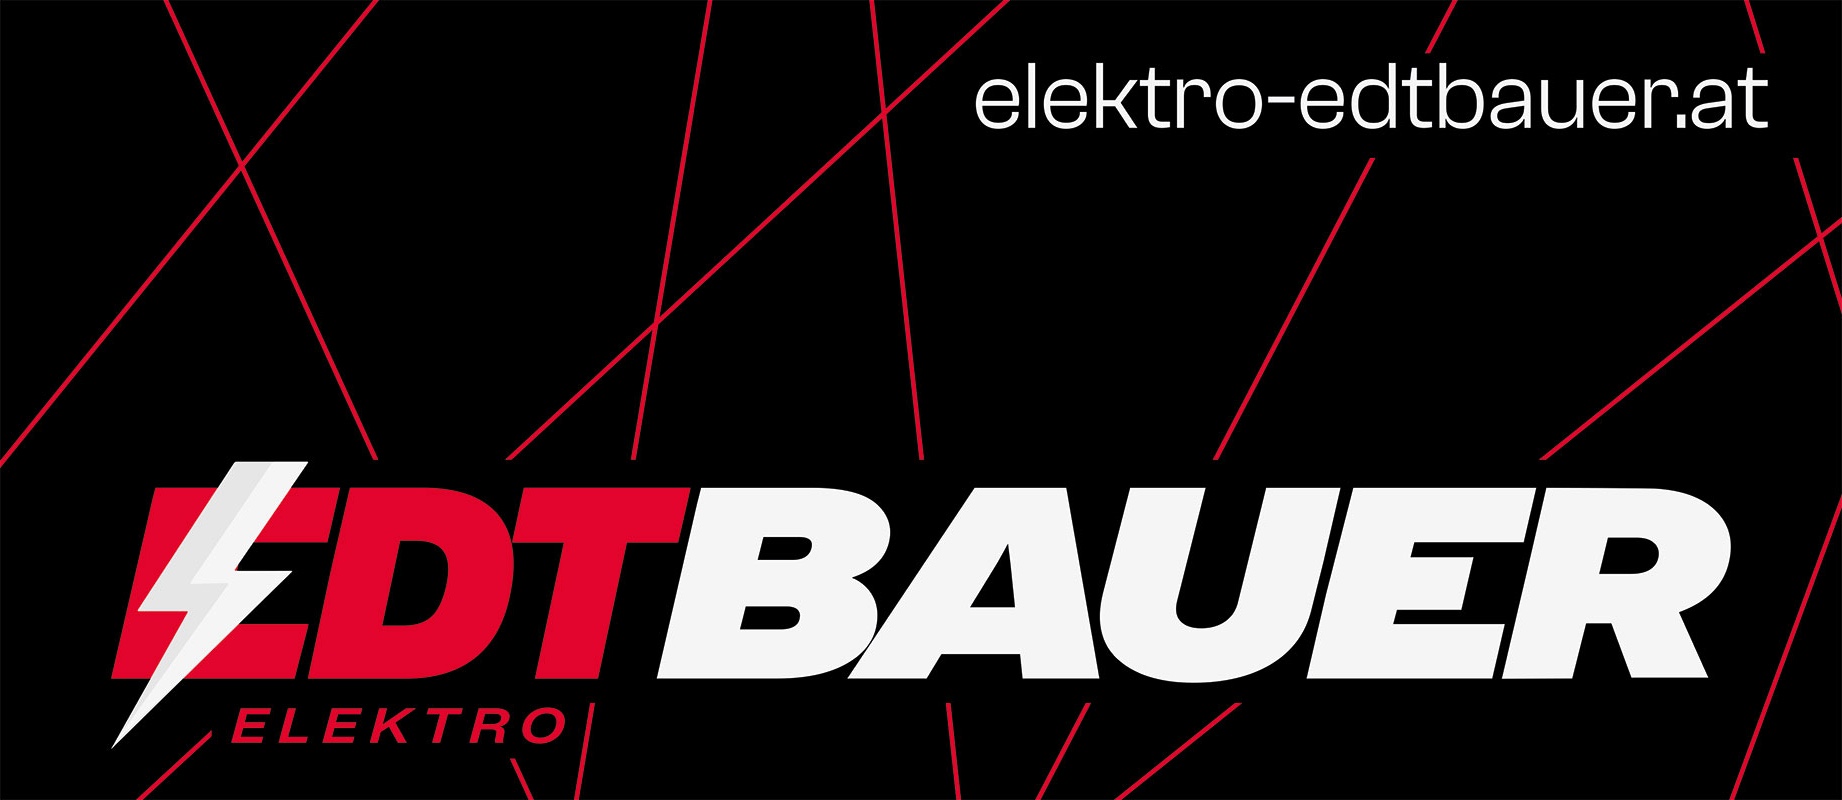 Elektro Edtbauer GmbH